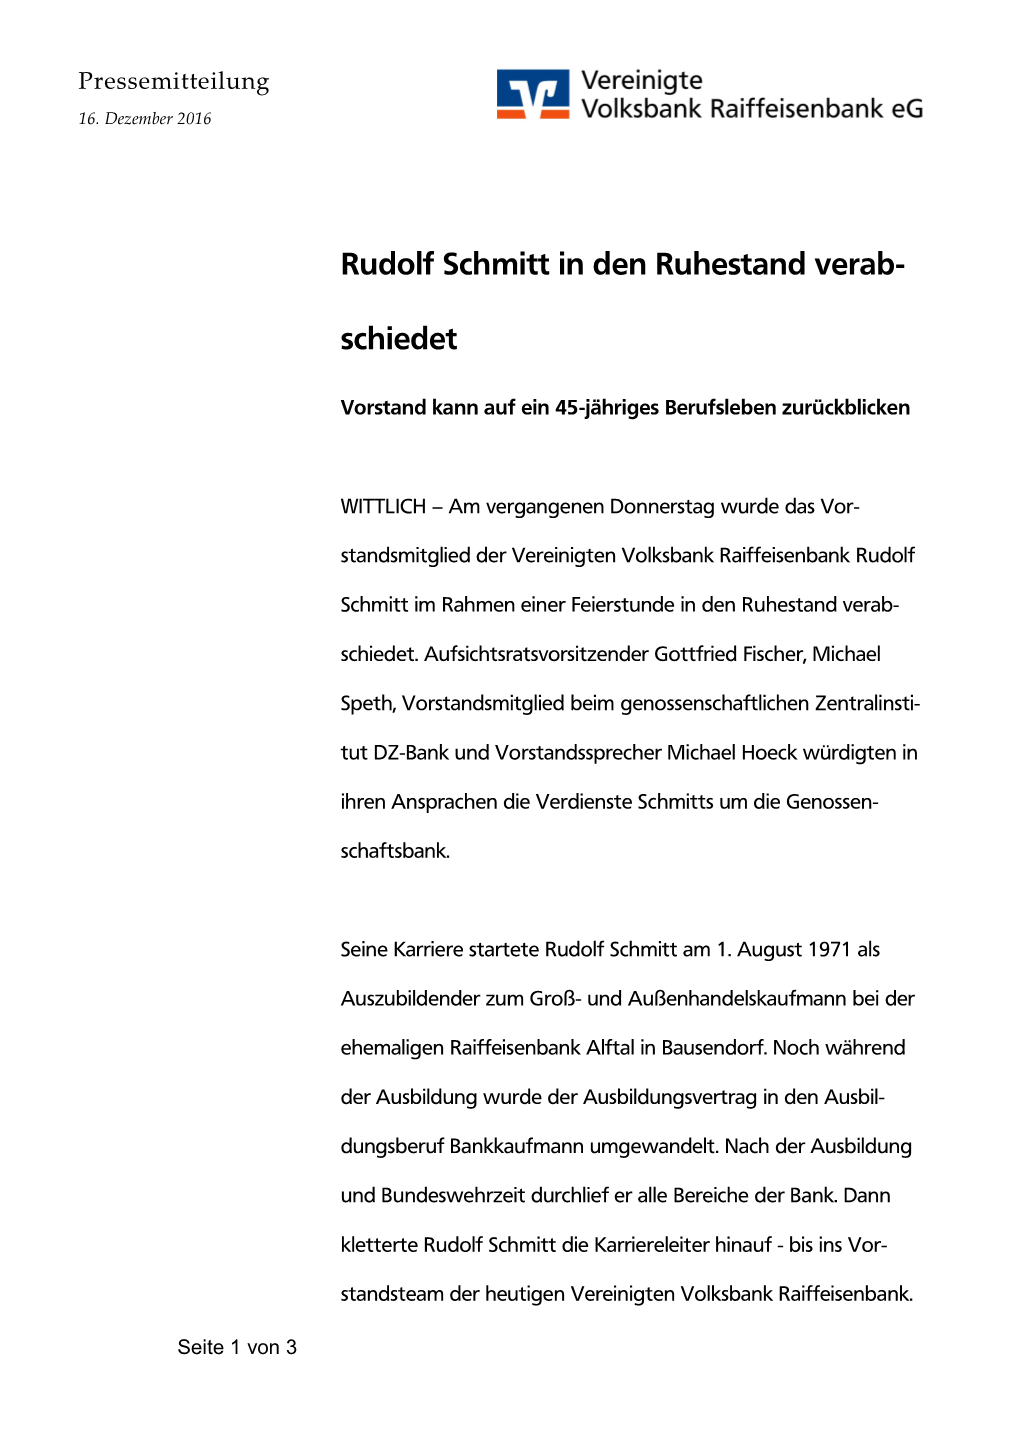 Rudolf Schmitt in Den Ruhestand Verab